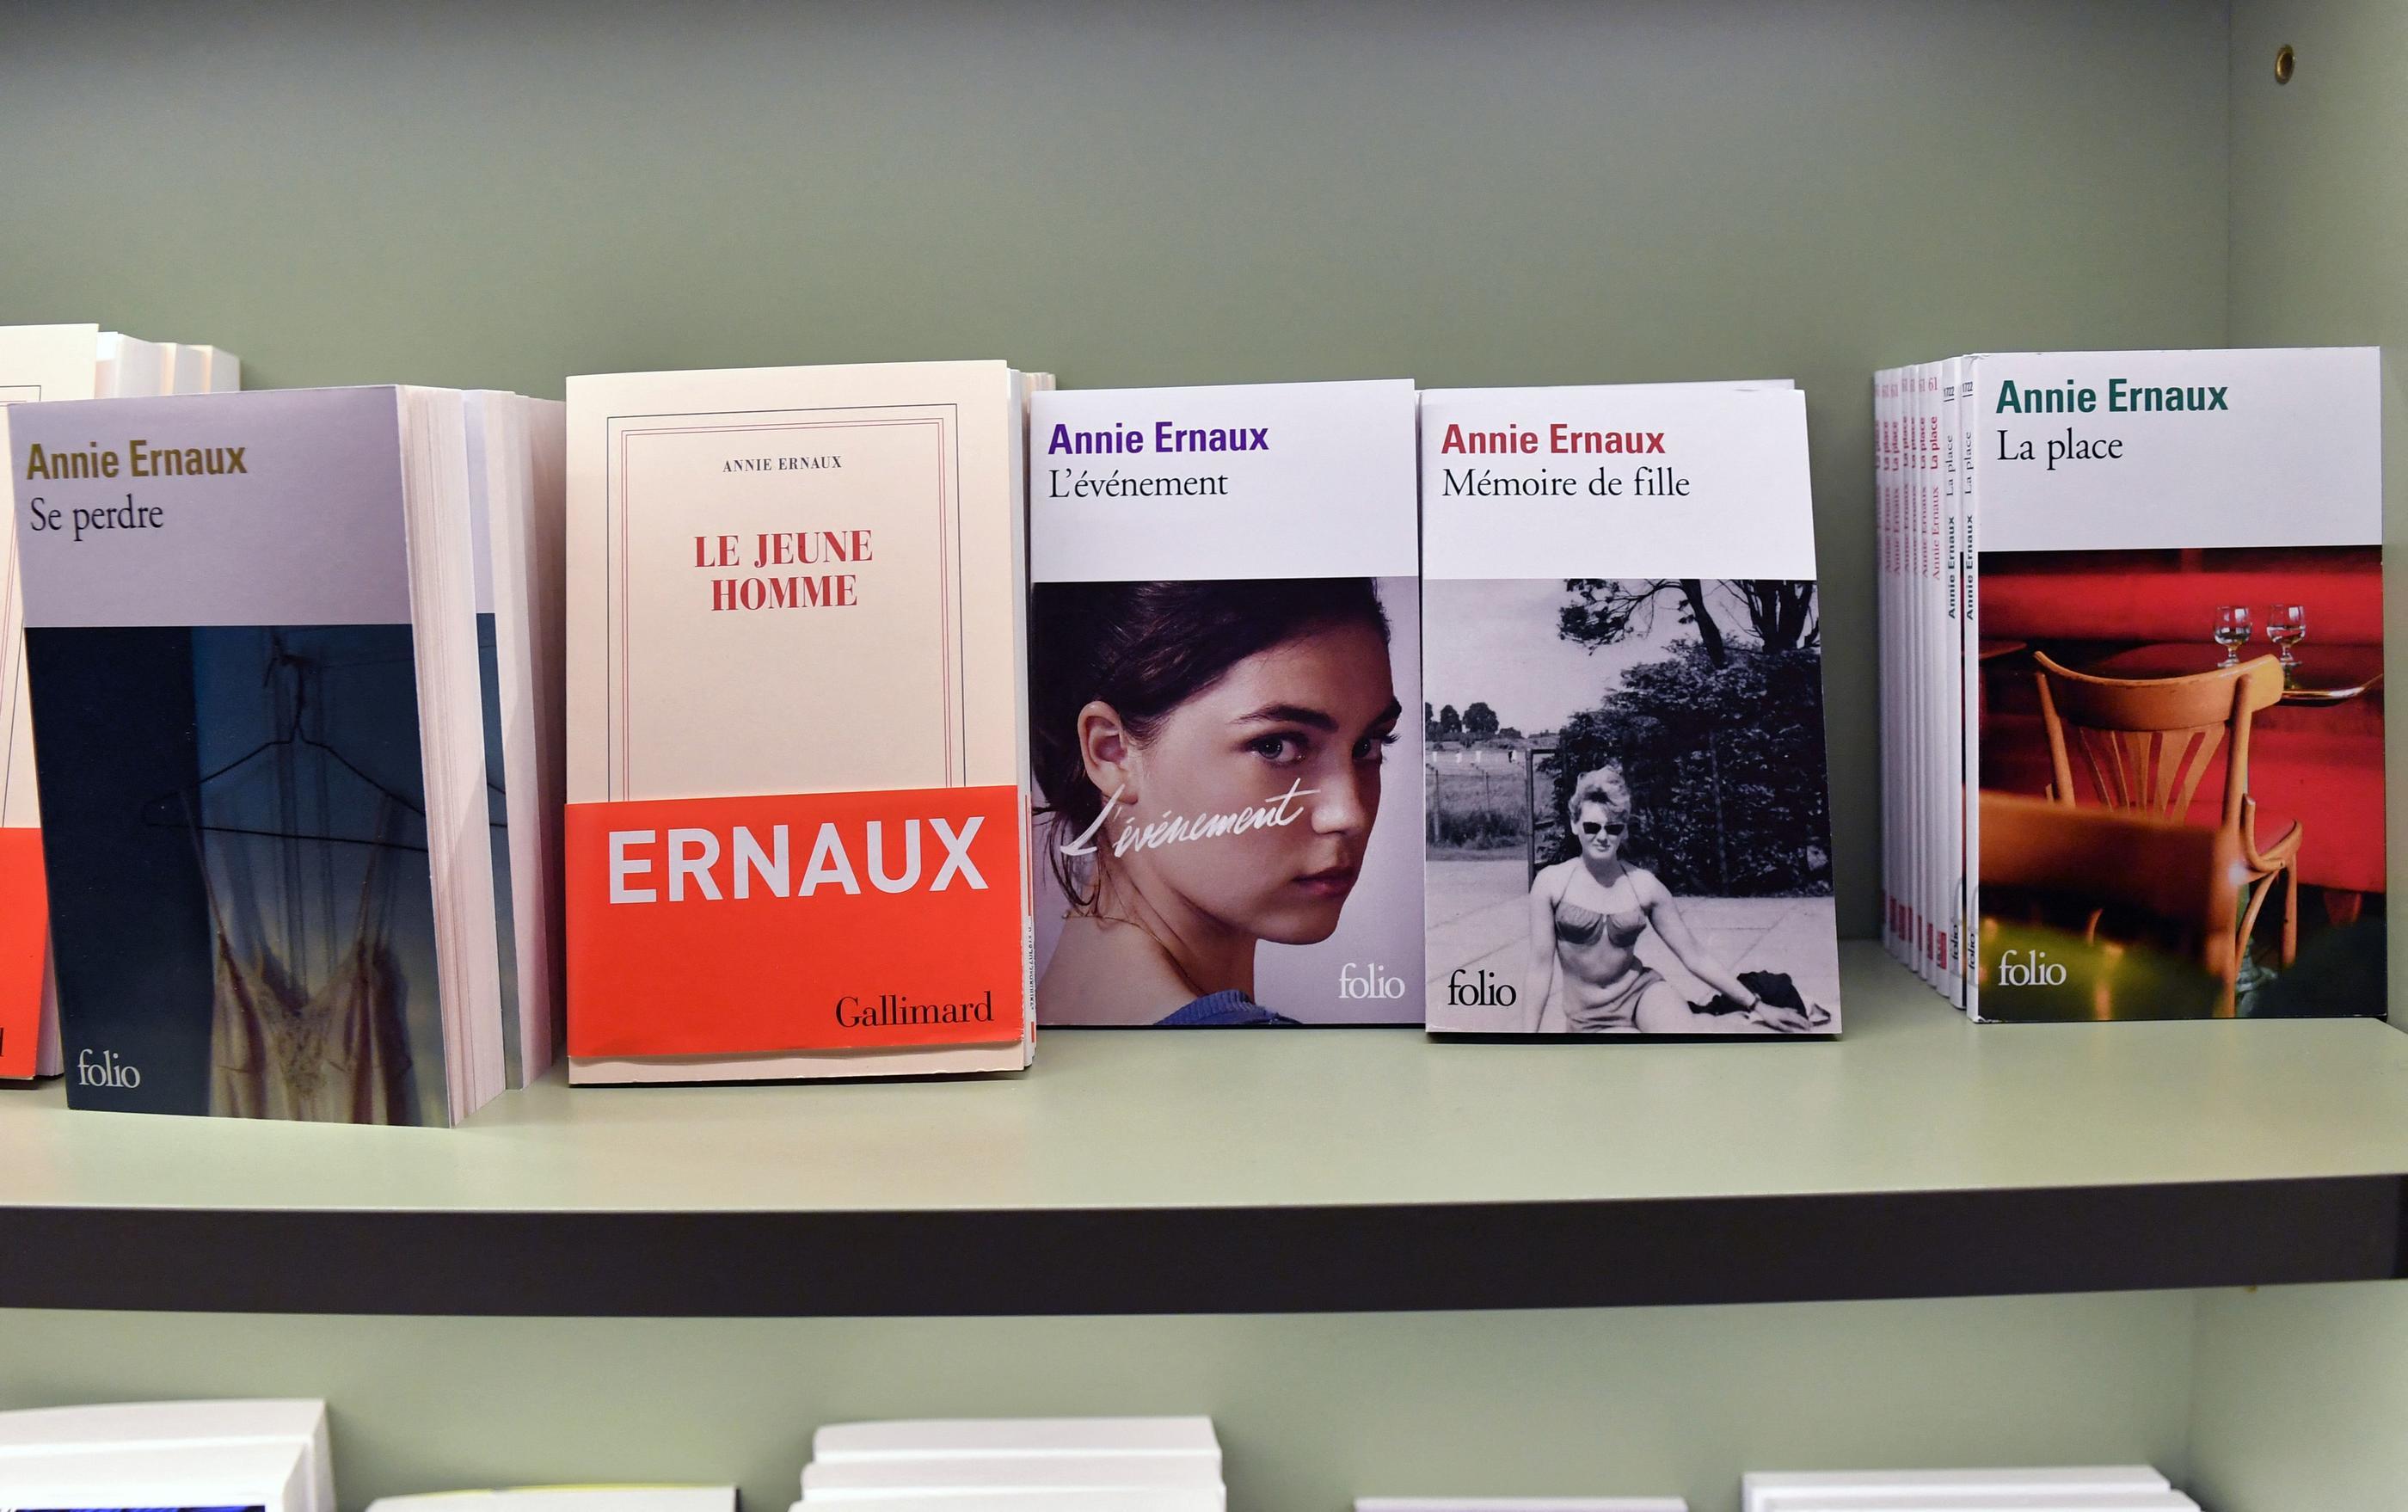 Les ventes de romans d'Annie Ernaux, qui n’a pas attendu le prix Nobel rencontrer un large public, s'envolent dans les librairies, son éditeur a lancé la réimpression de ses ouvrages pour pouvoir répondre à la demande. AFP/Andrea Renault